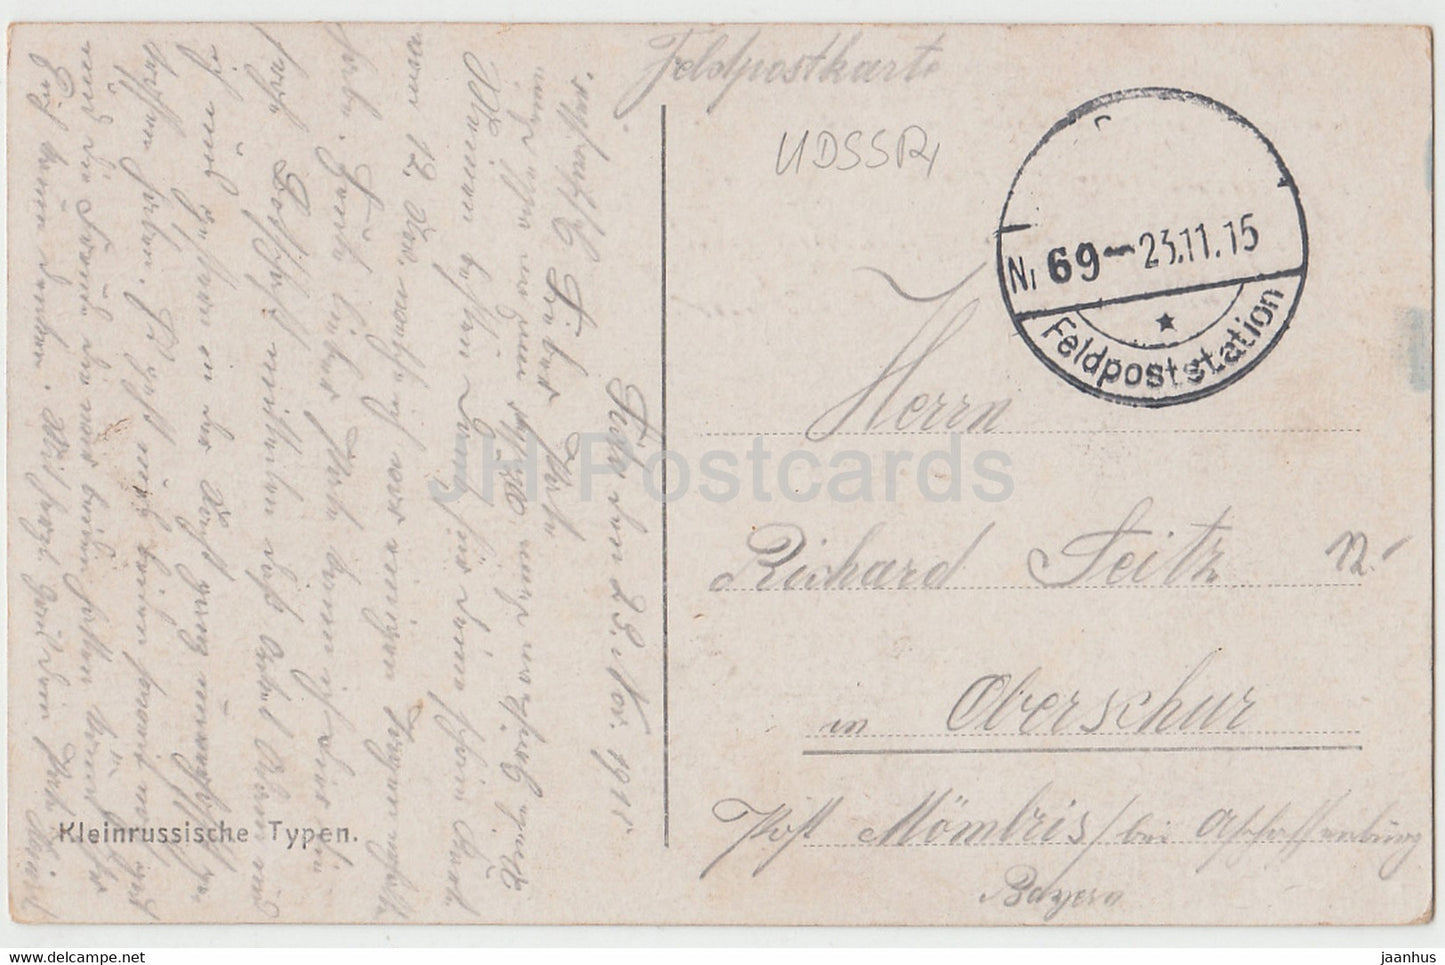 Kleinrussische Typen - moulin à vent - Feldpost - carte postale ancienne - 1915 - Ukraine - utilisé